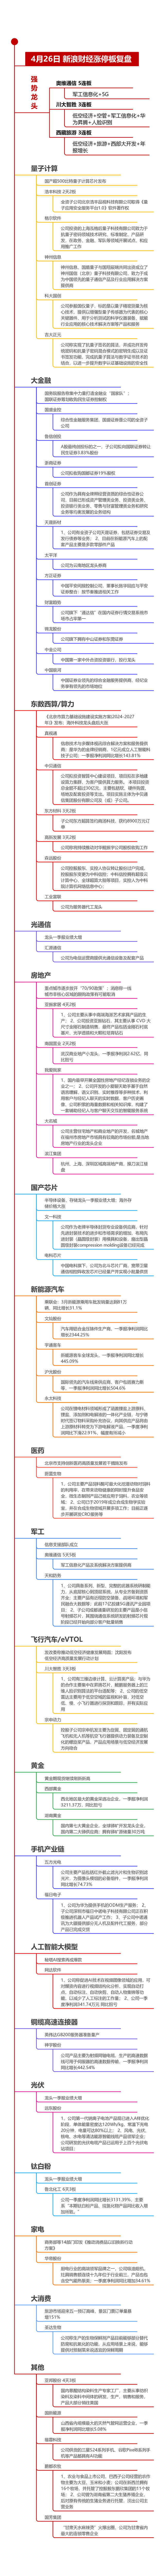 4月26日沪深两市涨停分析：奥维通信5连板，川大智胜、西藏旅游3连板